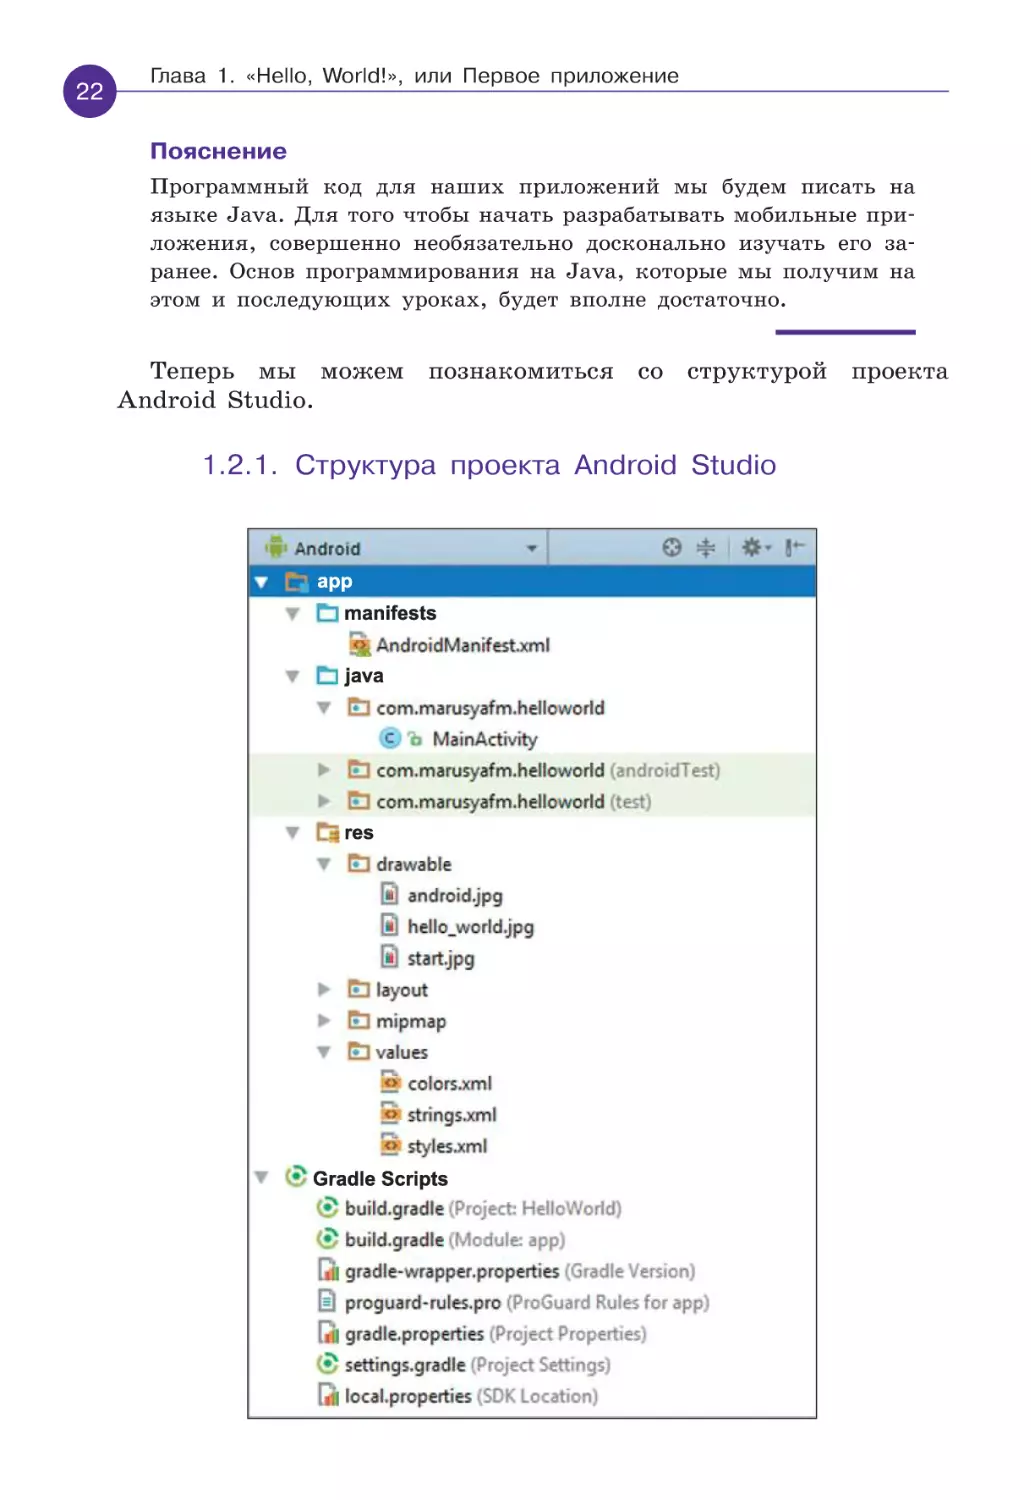 1.2.1. Структура проекта Android Studio